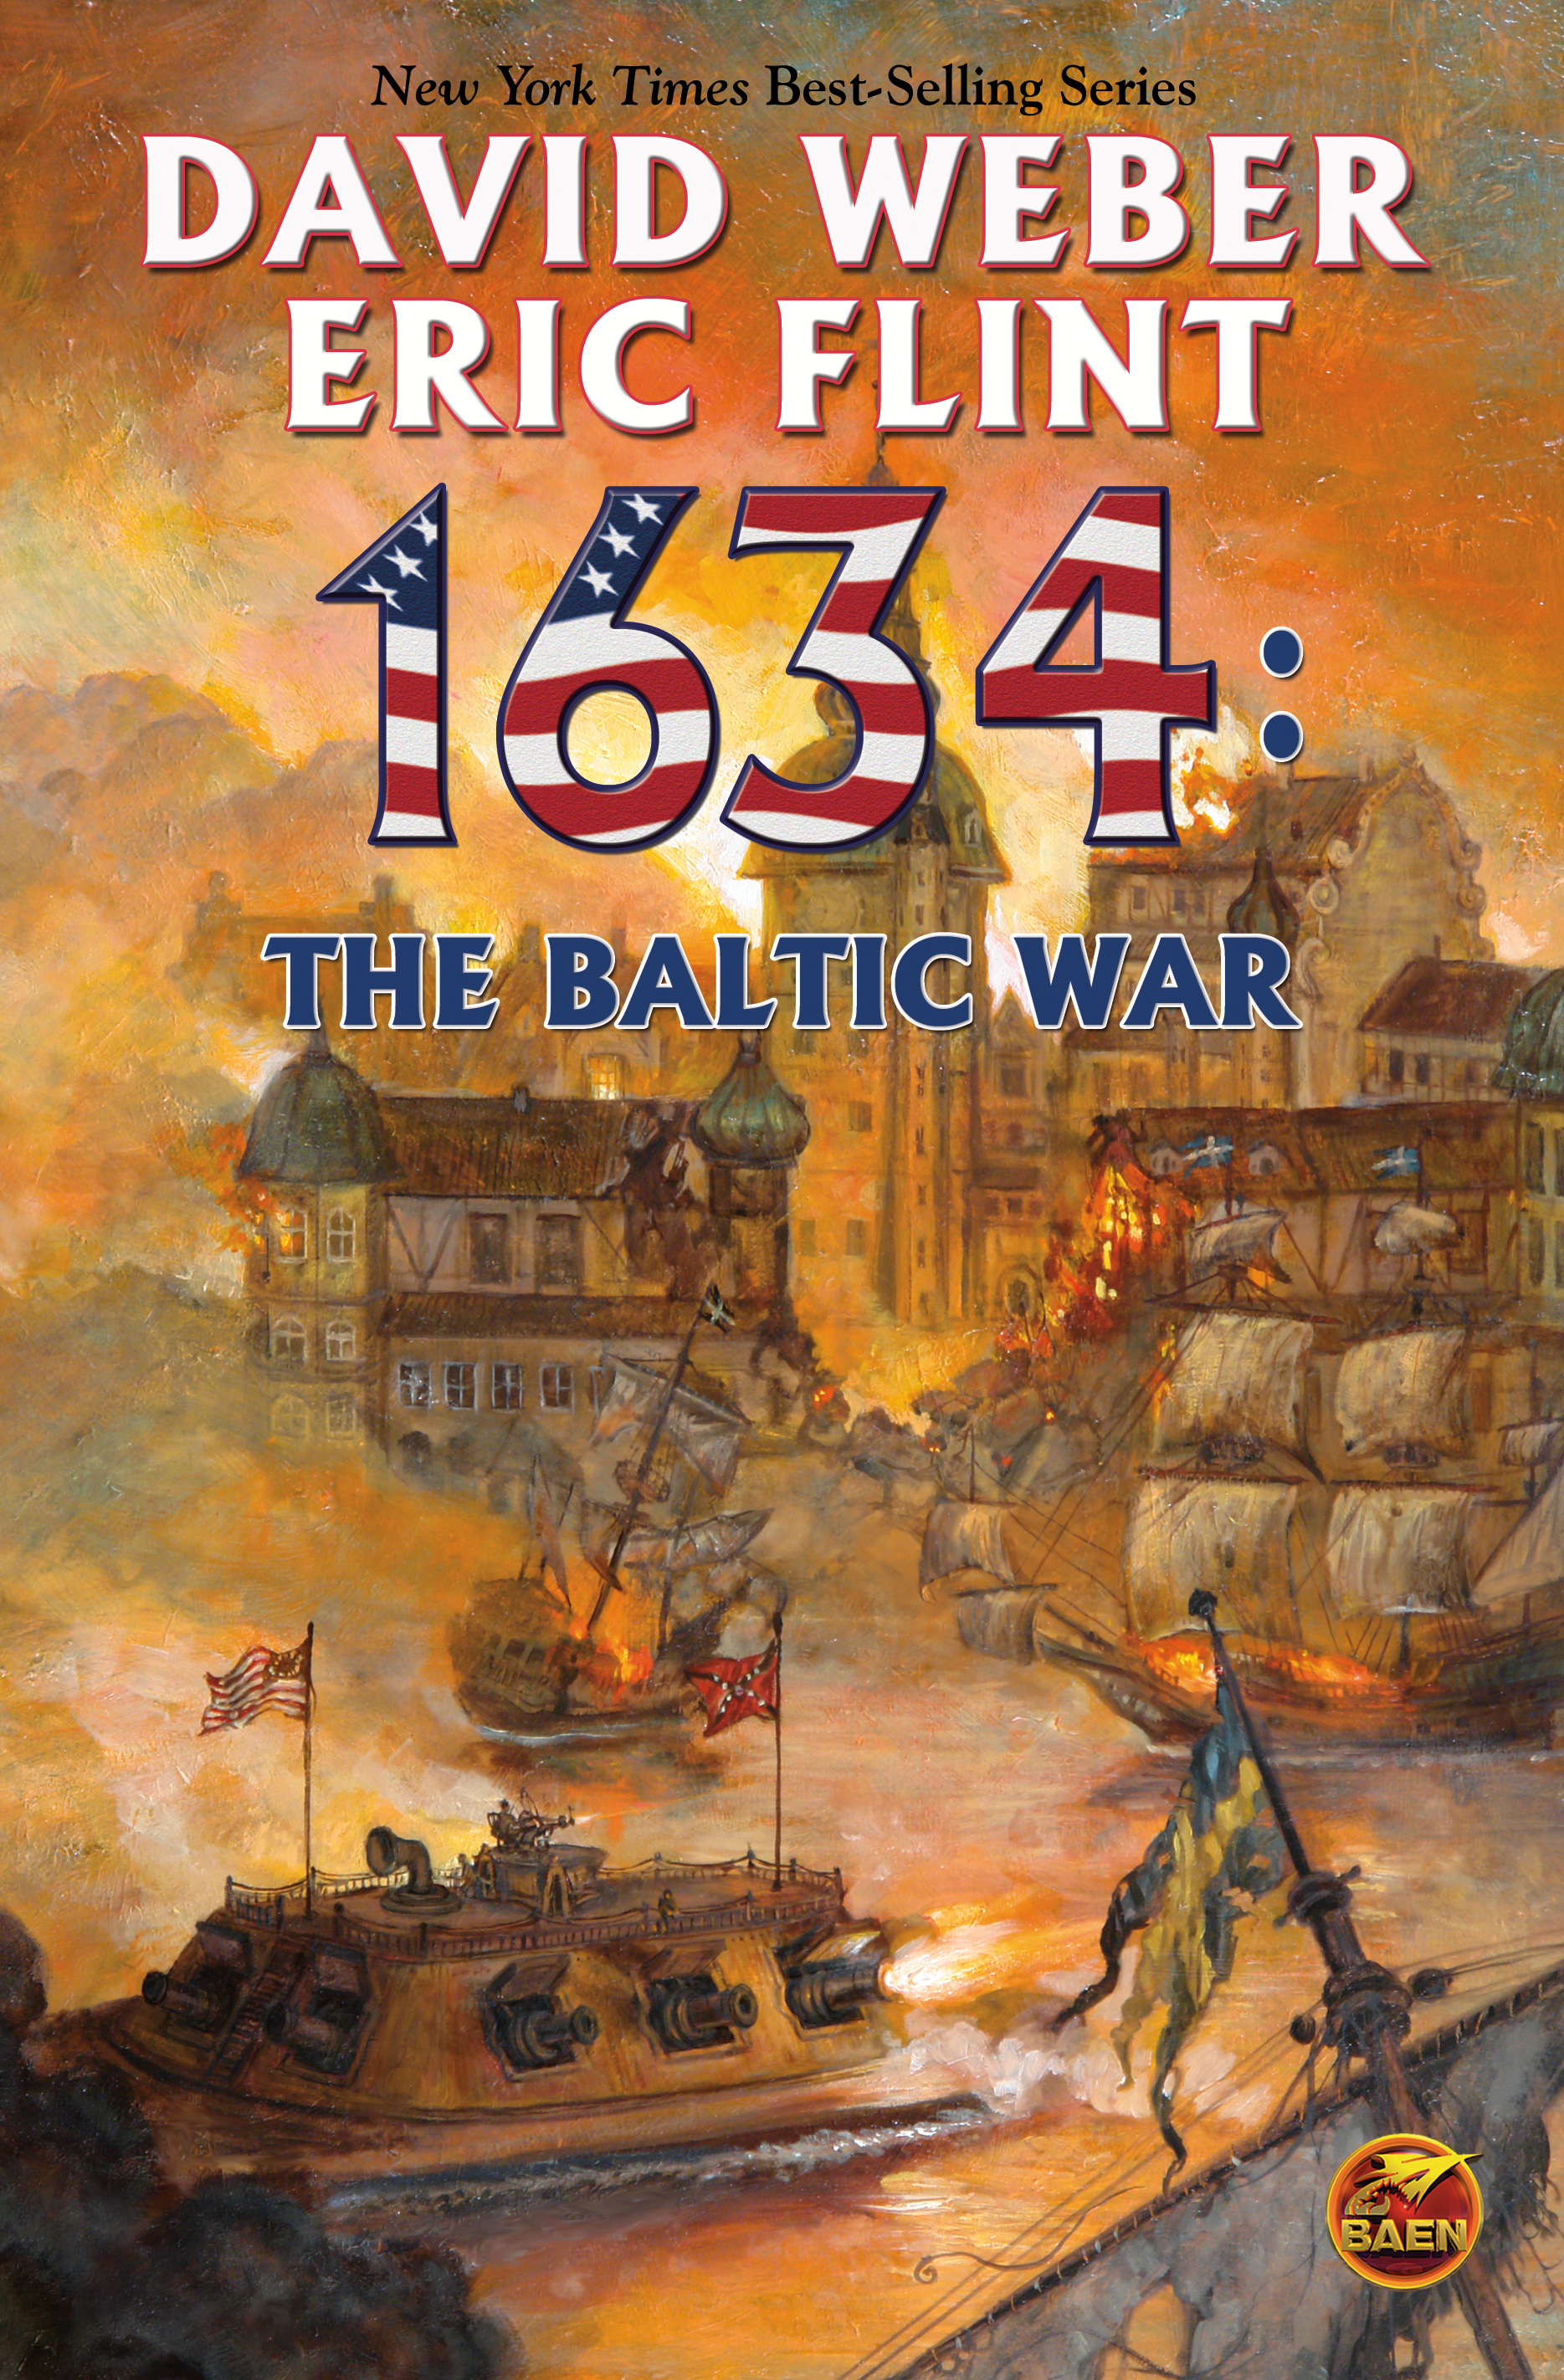 Eric Flint, David Weber: 1634: The Baltic War (2007, Bean Books)